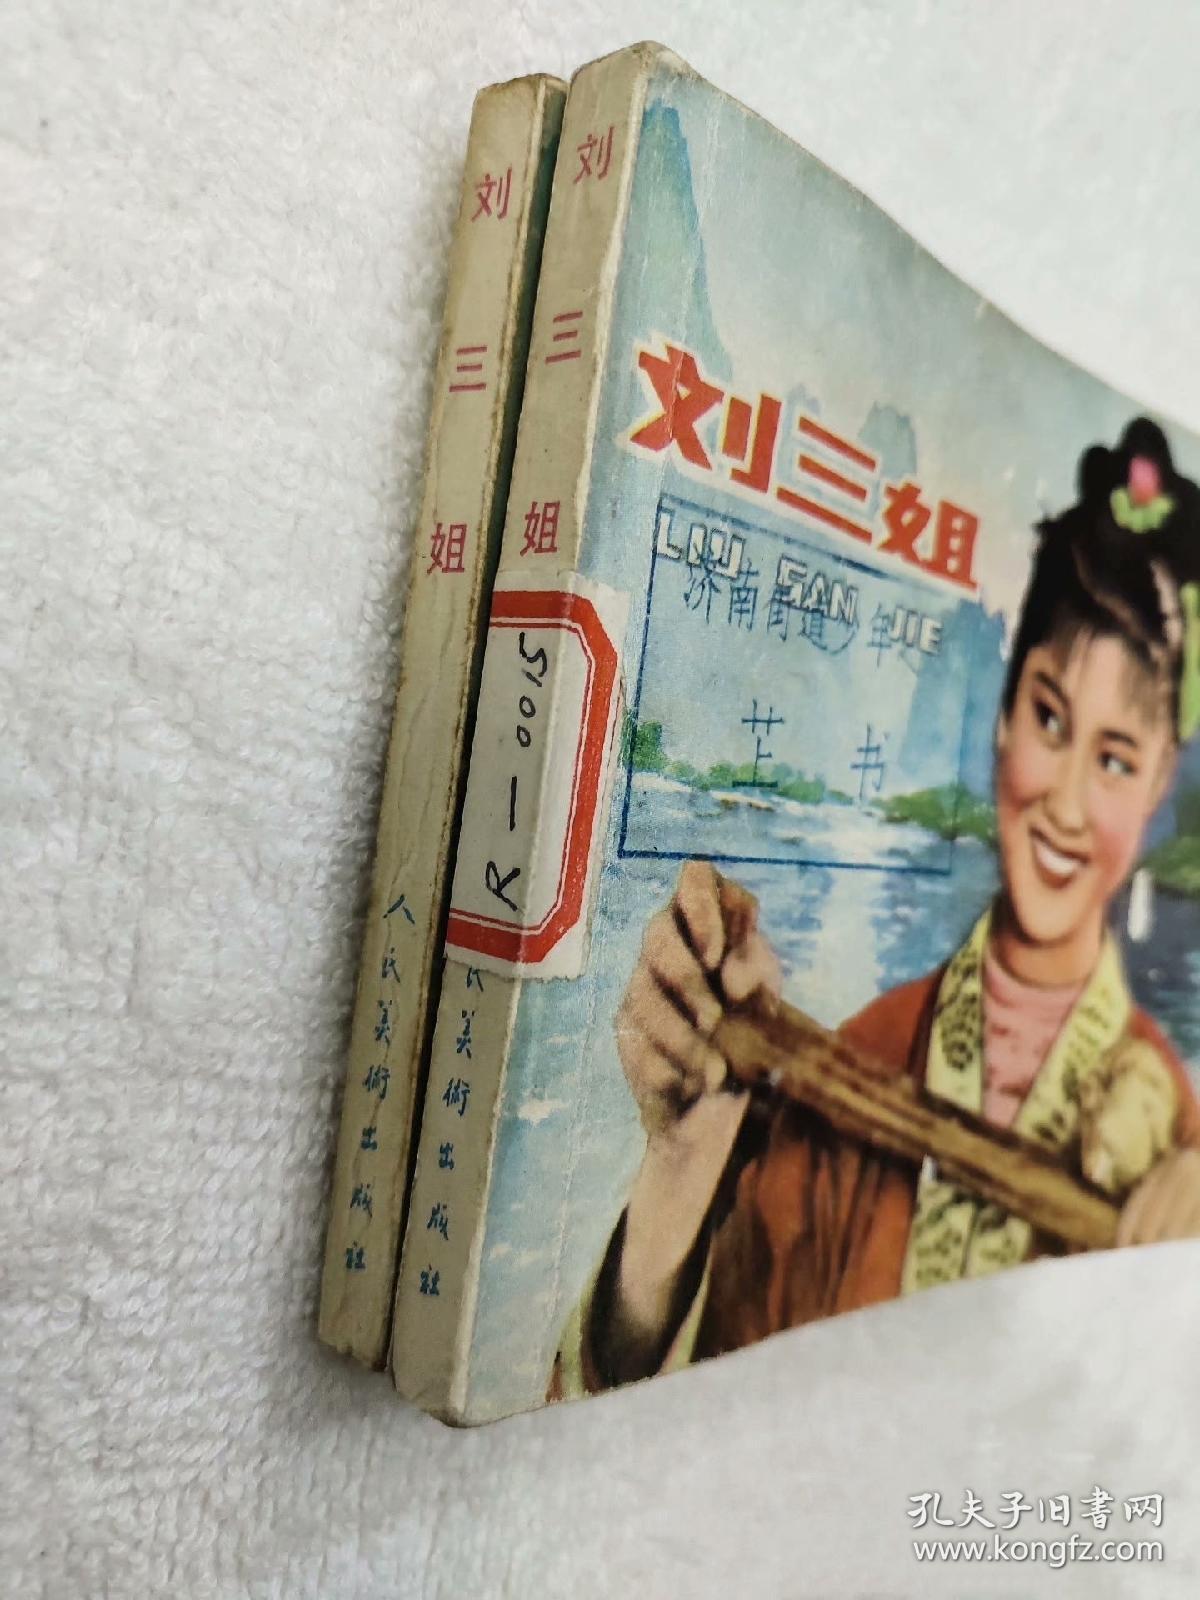 1979年《刘三姐》连环画小人书

人美出版，品相好，包老包真，欢迎收藏。
标价为一本的价格。